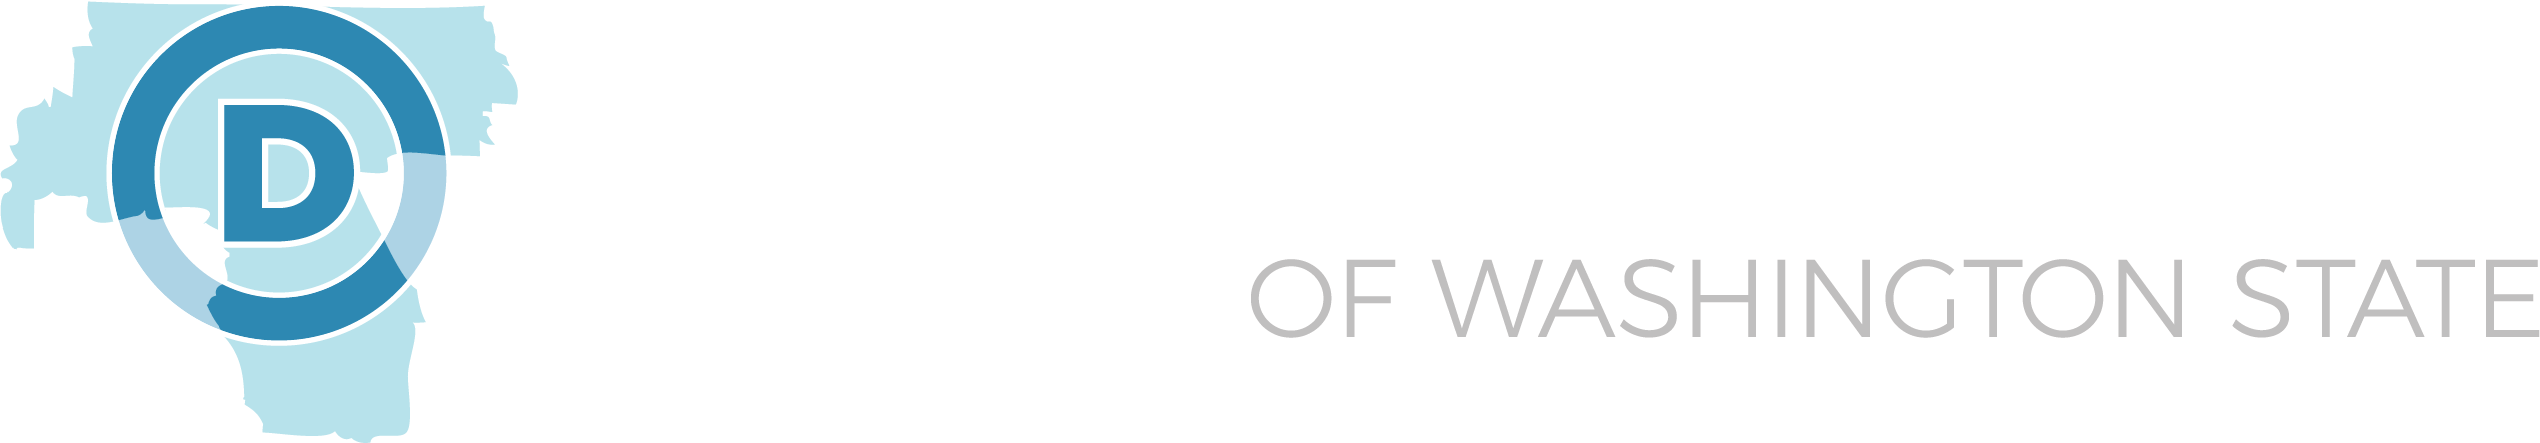 45th District Democrats